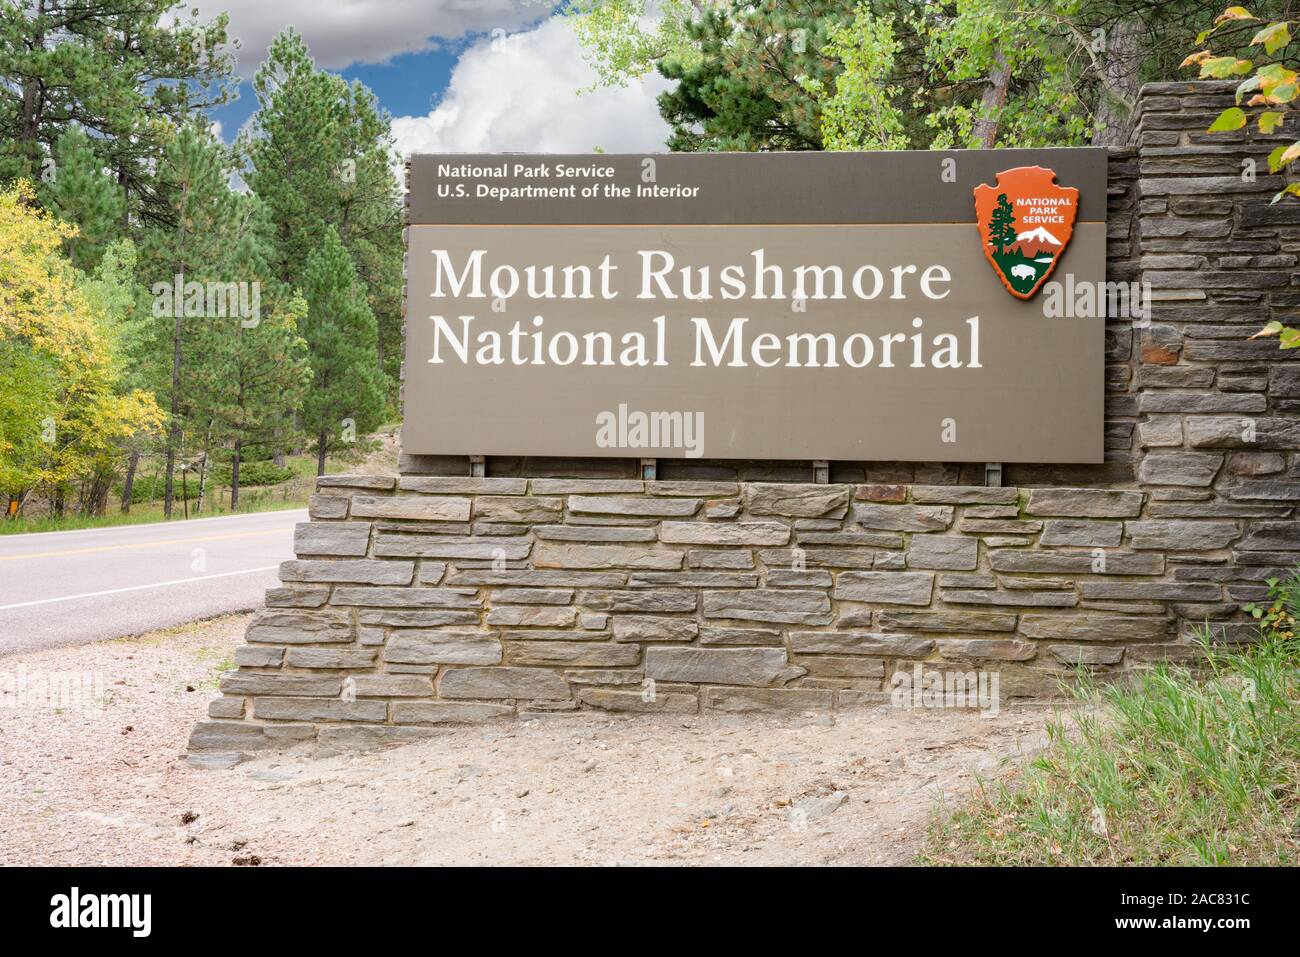 Keystone, SD - 25 septembre 2019 : Mount Rushmore National Memorial Panneau d'entrée Banque D'Images